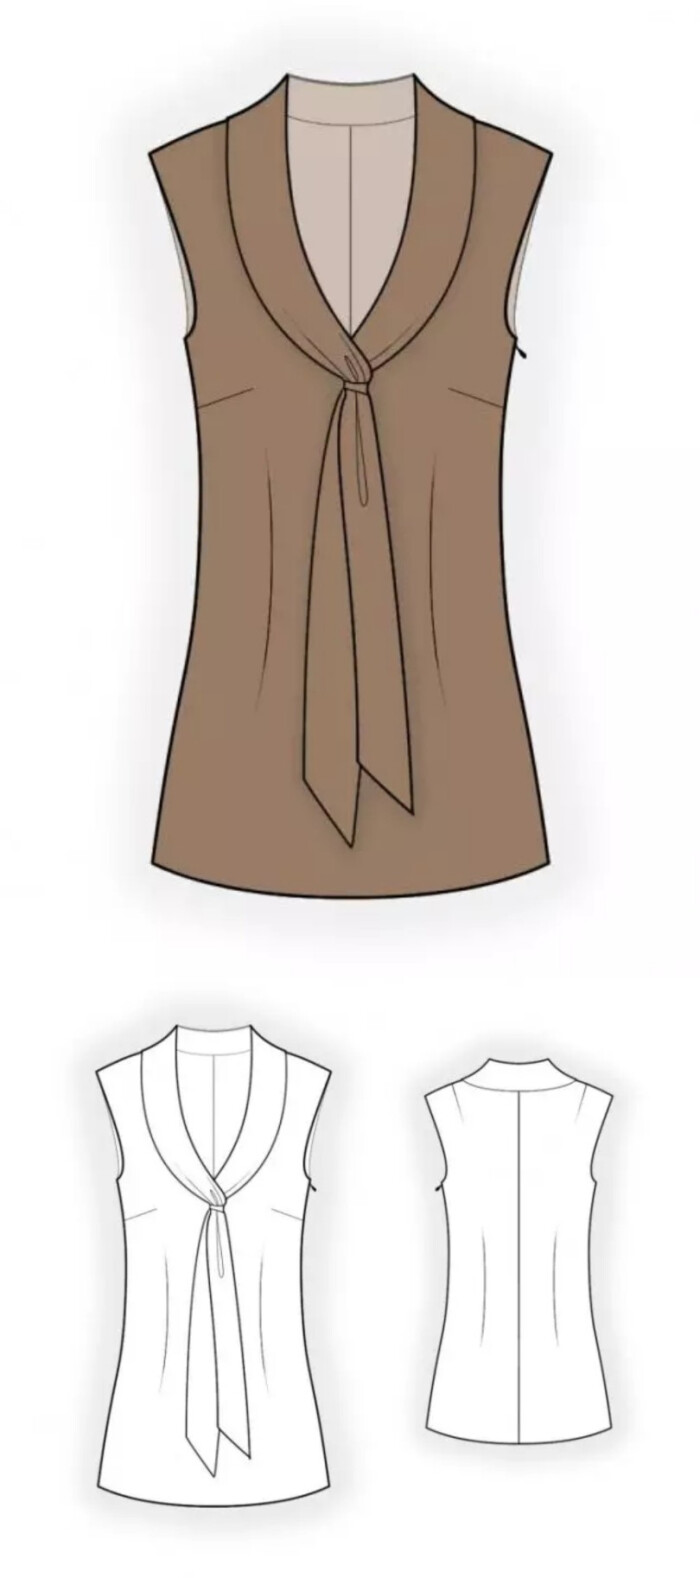 无袖v领系带女士夏装的效果图 款式图 uv贴图